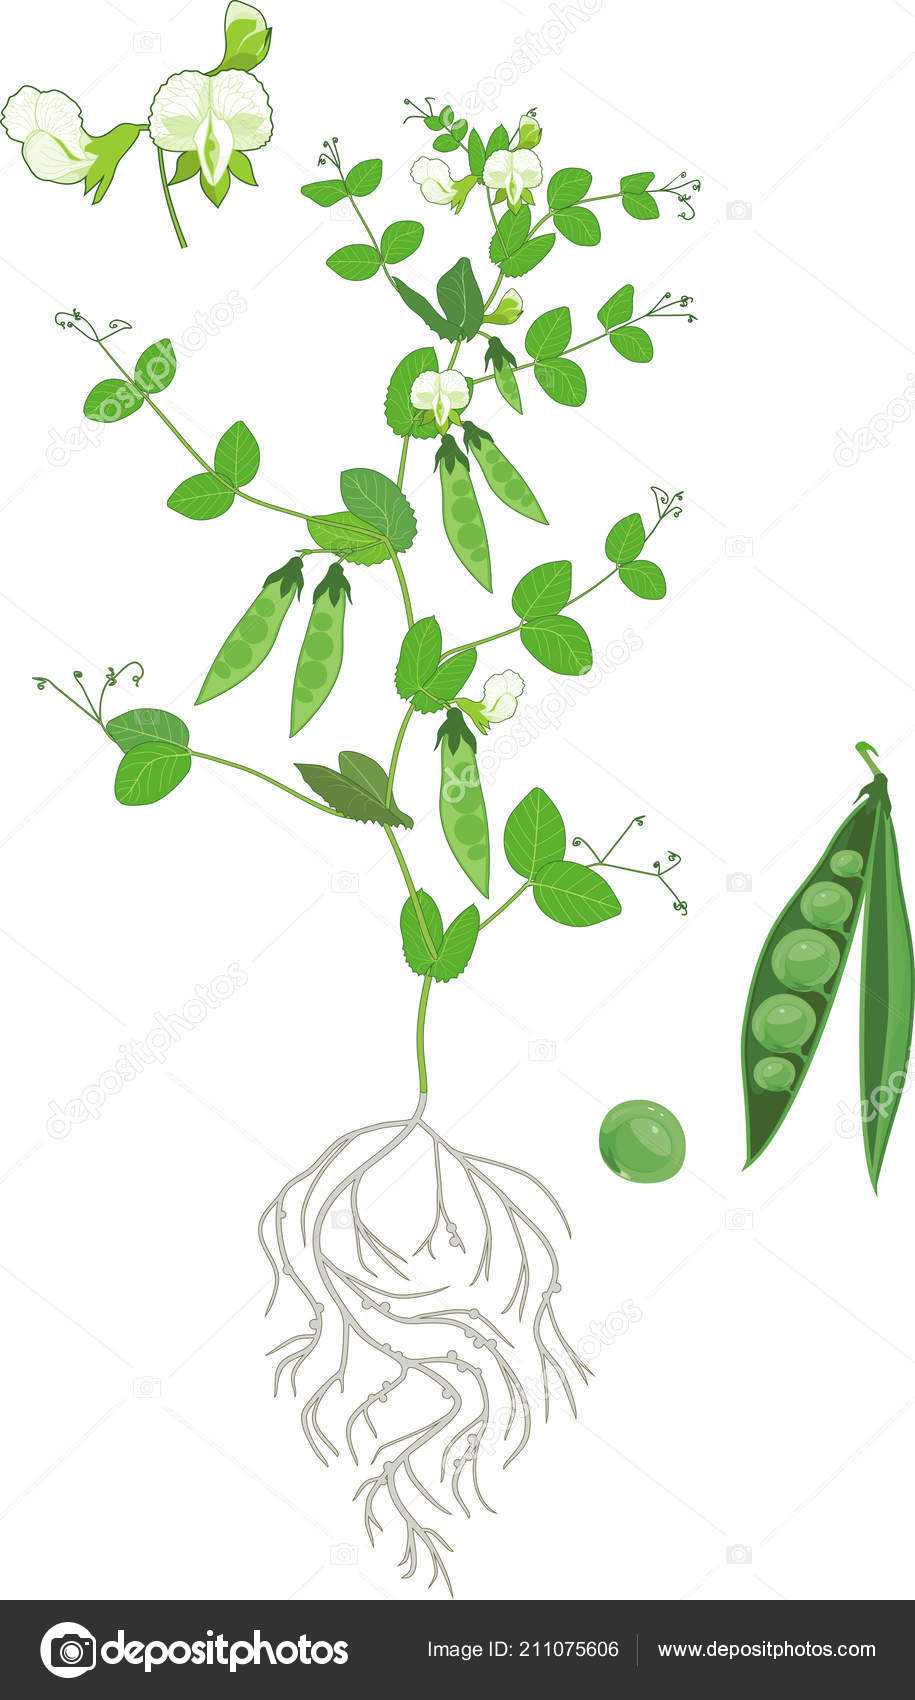 Sweet peas flower drawing illustration. - Stock Illustration [38931702] -  PIXTA